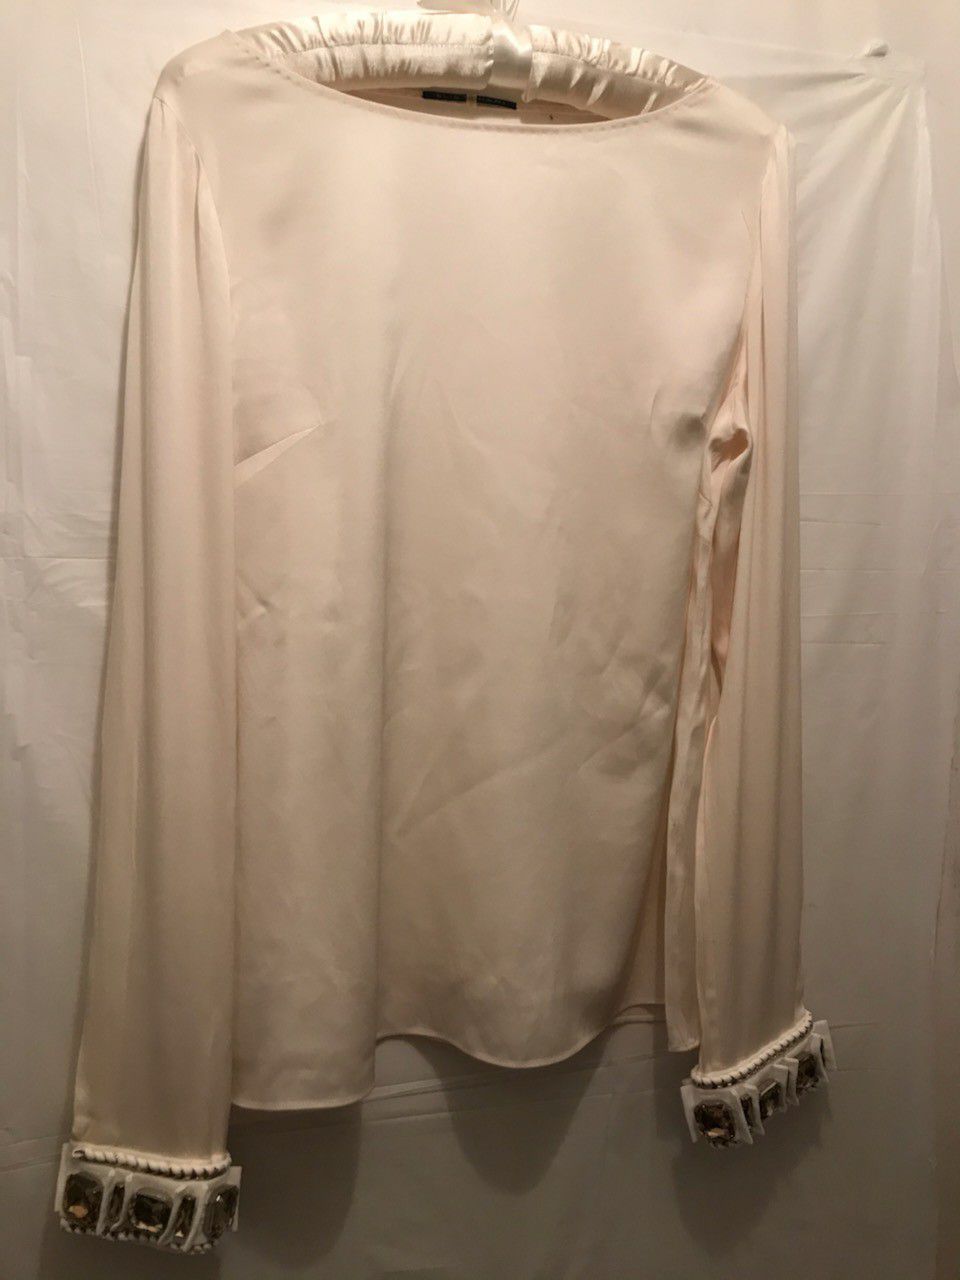 Elie tahari women's blouse size M